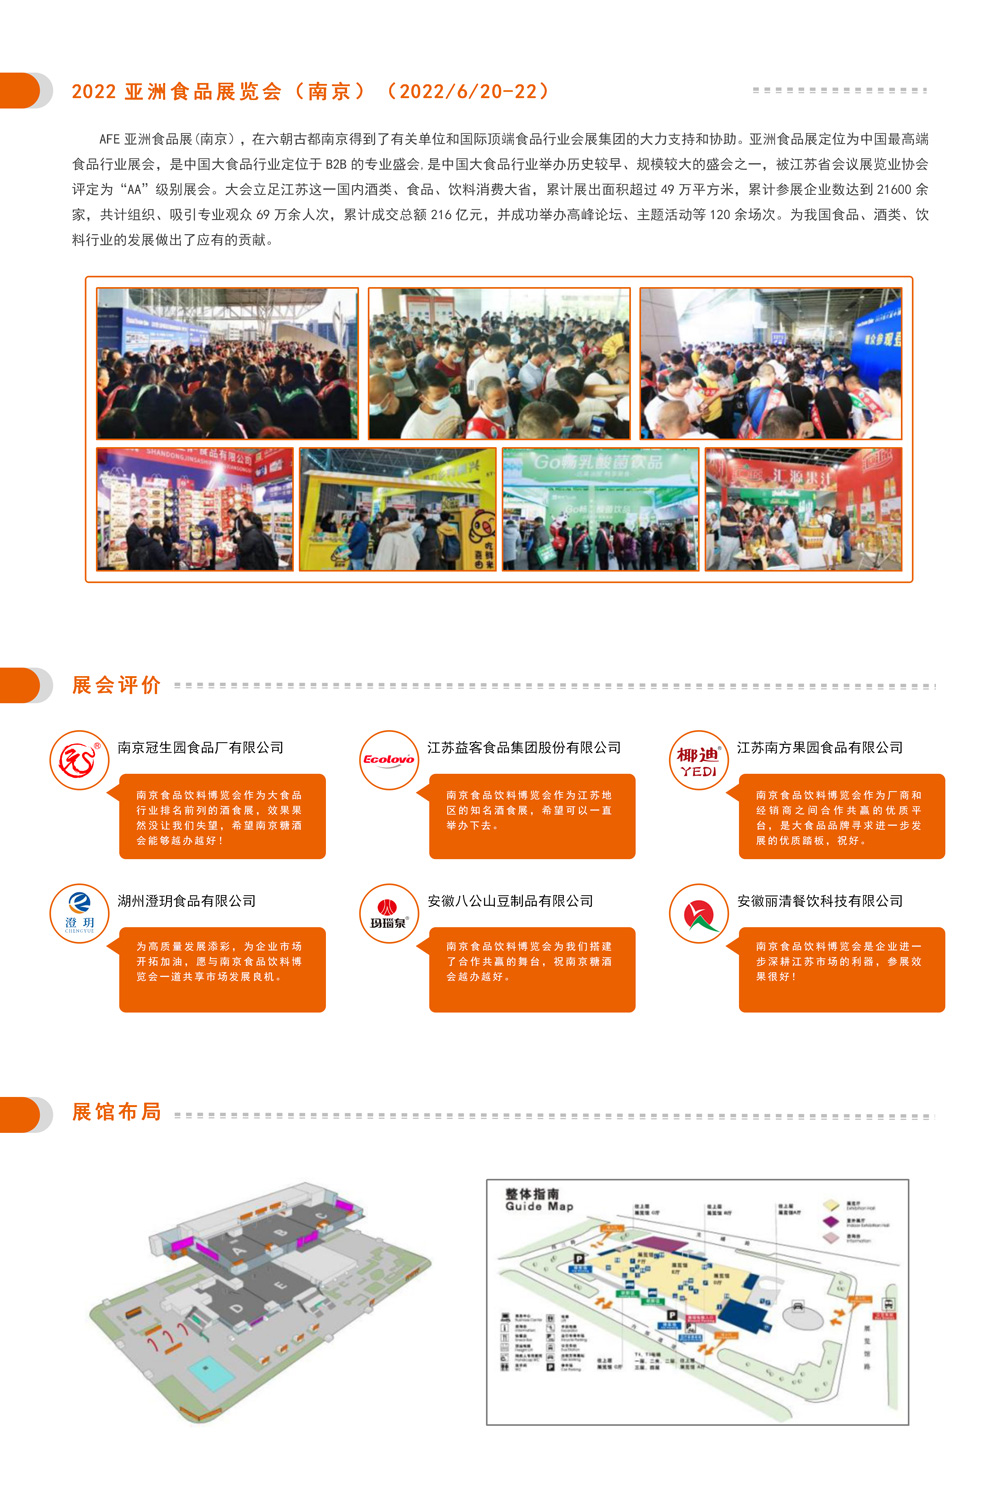 邀請函-2022第10屆中國（南京）國際食品飲料博覽會(1)_02.jpg